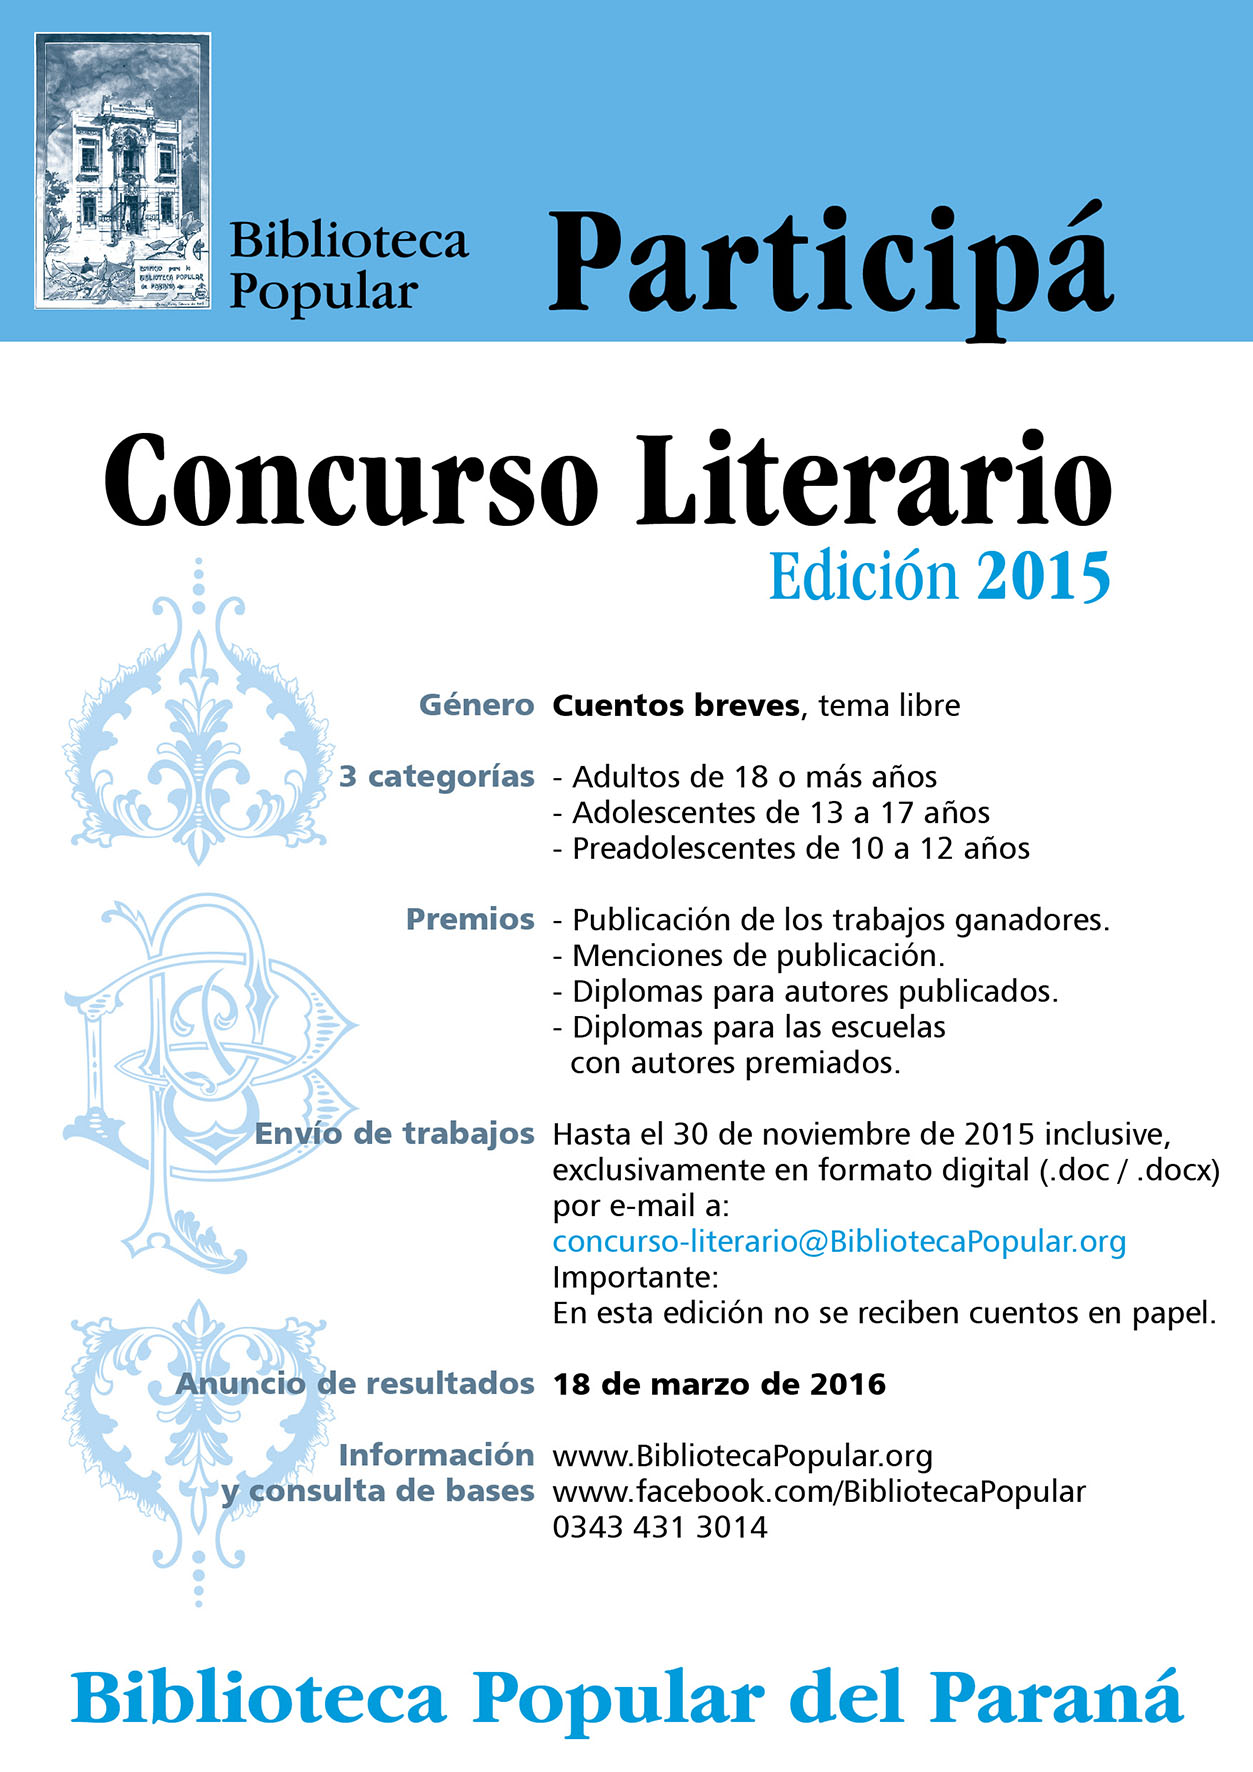 Afiche promocional del Concurso Biblioteca Popular del Paraná, Edición 2015